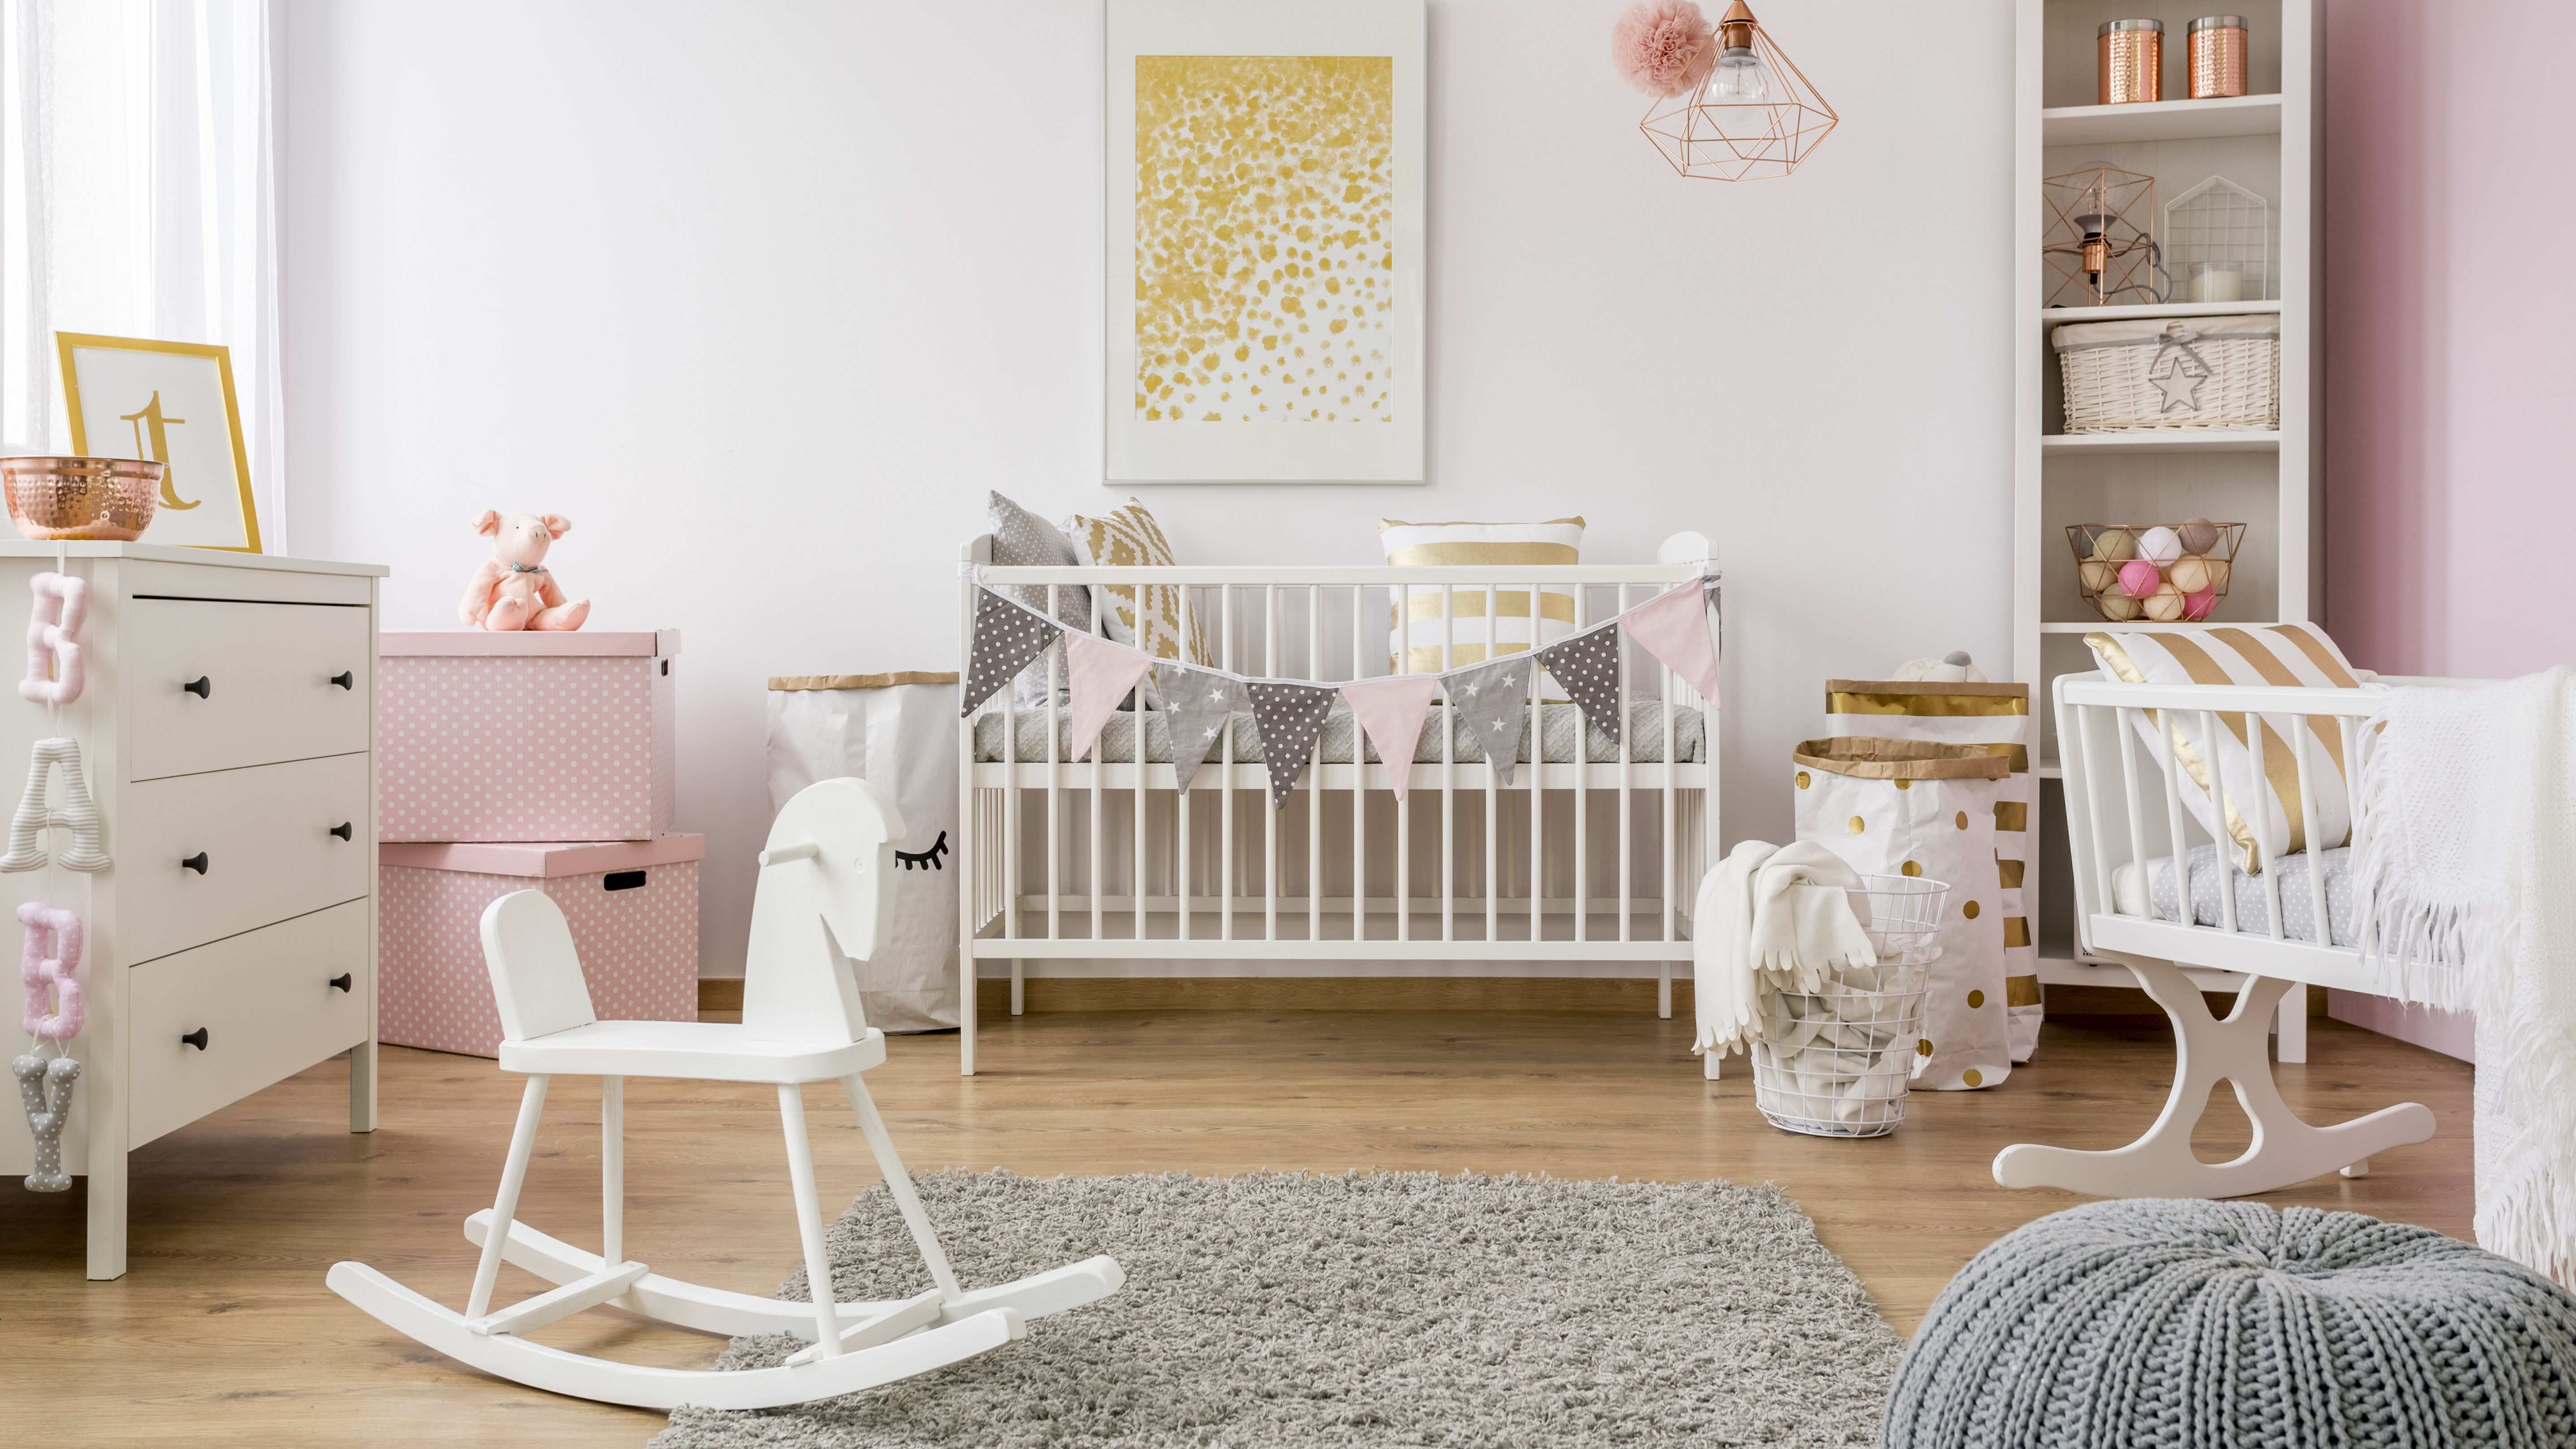 Comment bien aménager une chambre bébé ?